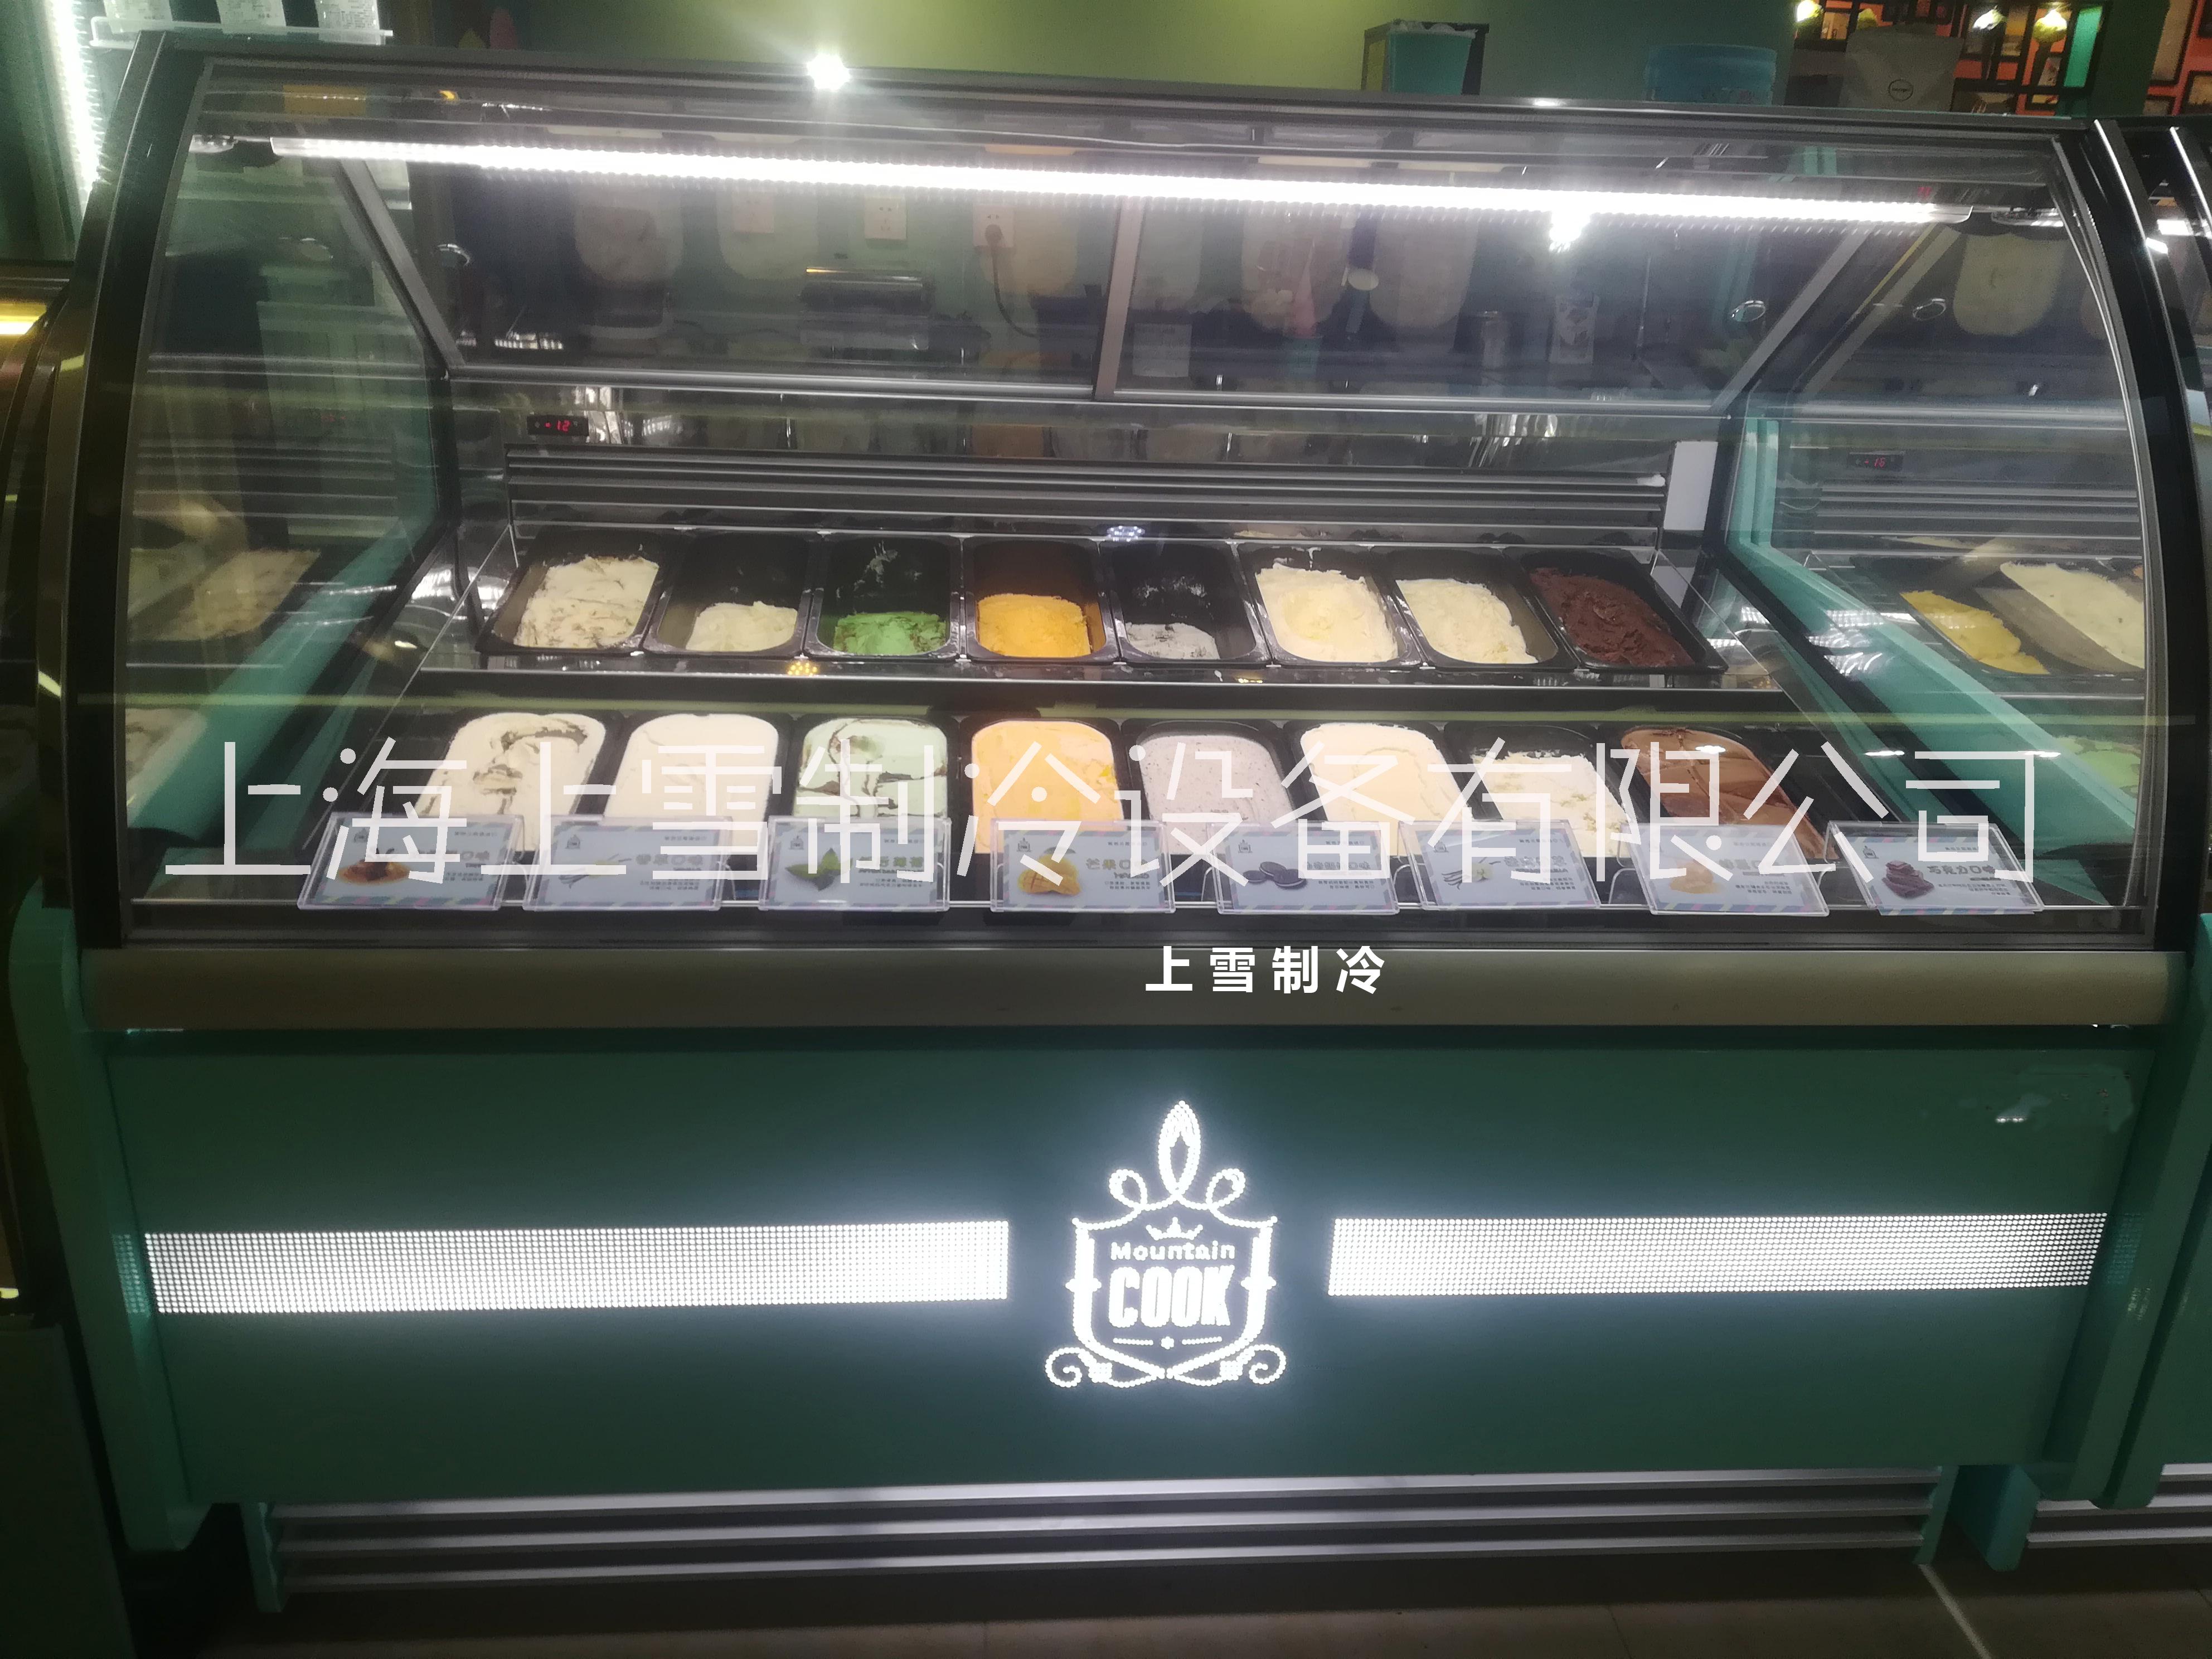 厂家直销硬质冰淇淋冷冻冰柜 份盒冰淇淋展示柜 方盒冰淇淋冷冻冷风柜图片